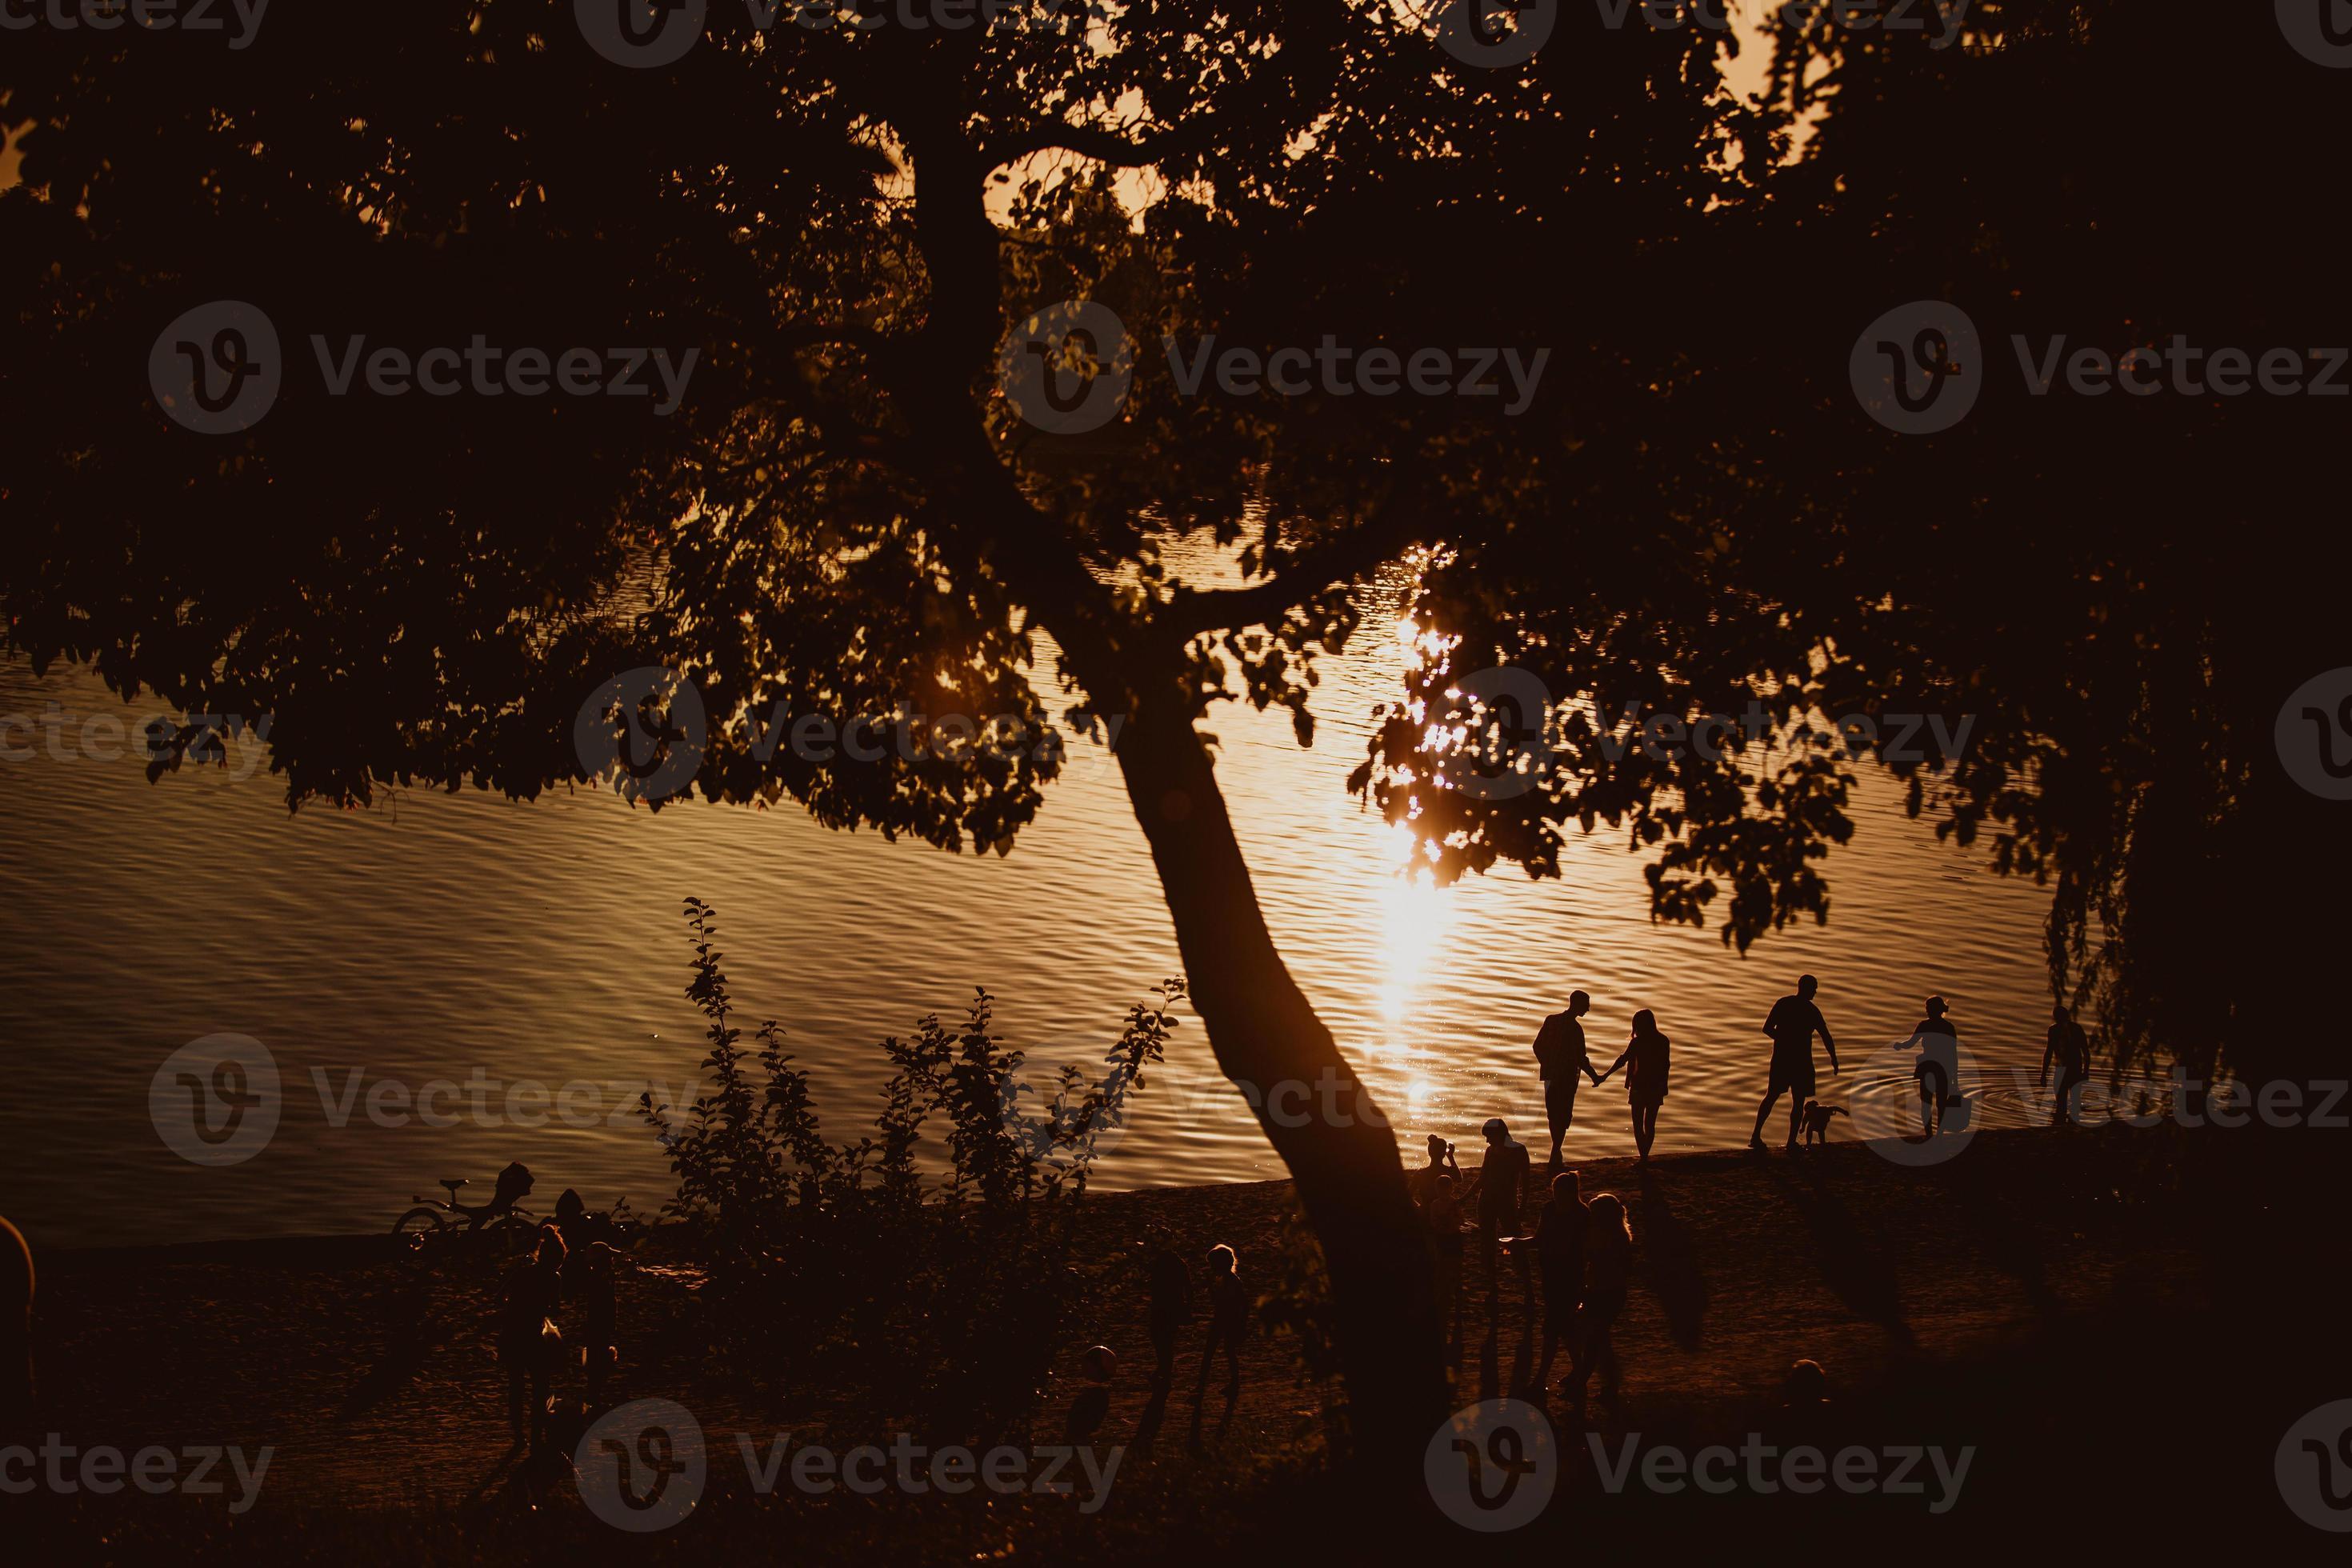 Entspannung am Strand, atemberaubender Sonnenuntergang, Sonnenuntergang in der Nähe des Wassers, Sonnenuntergang warf die Bäume Menschen in der Nähe des Wassers, Menschen in der Nähe des Sonnenuntergangs foto